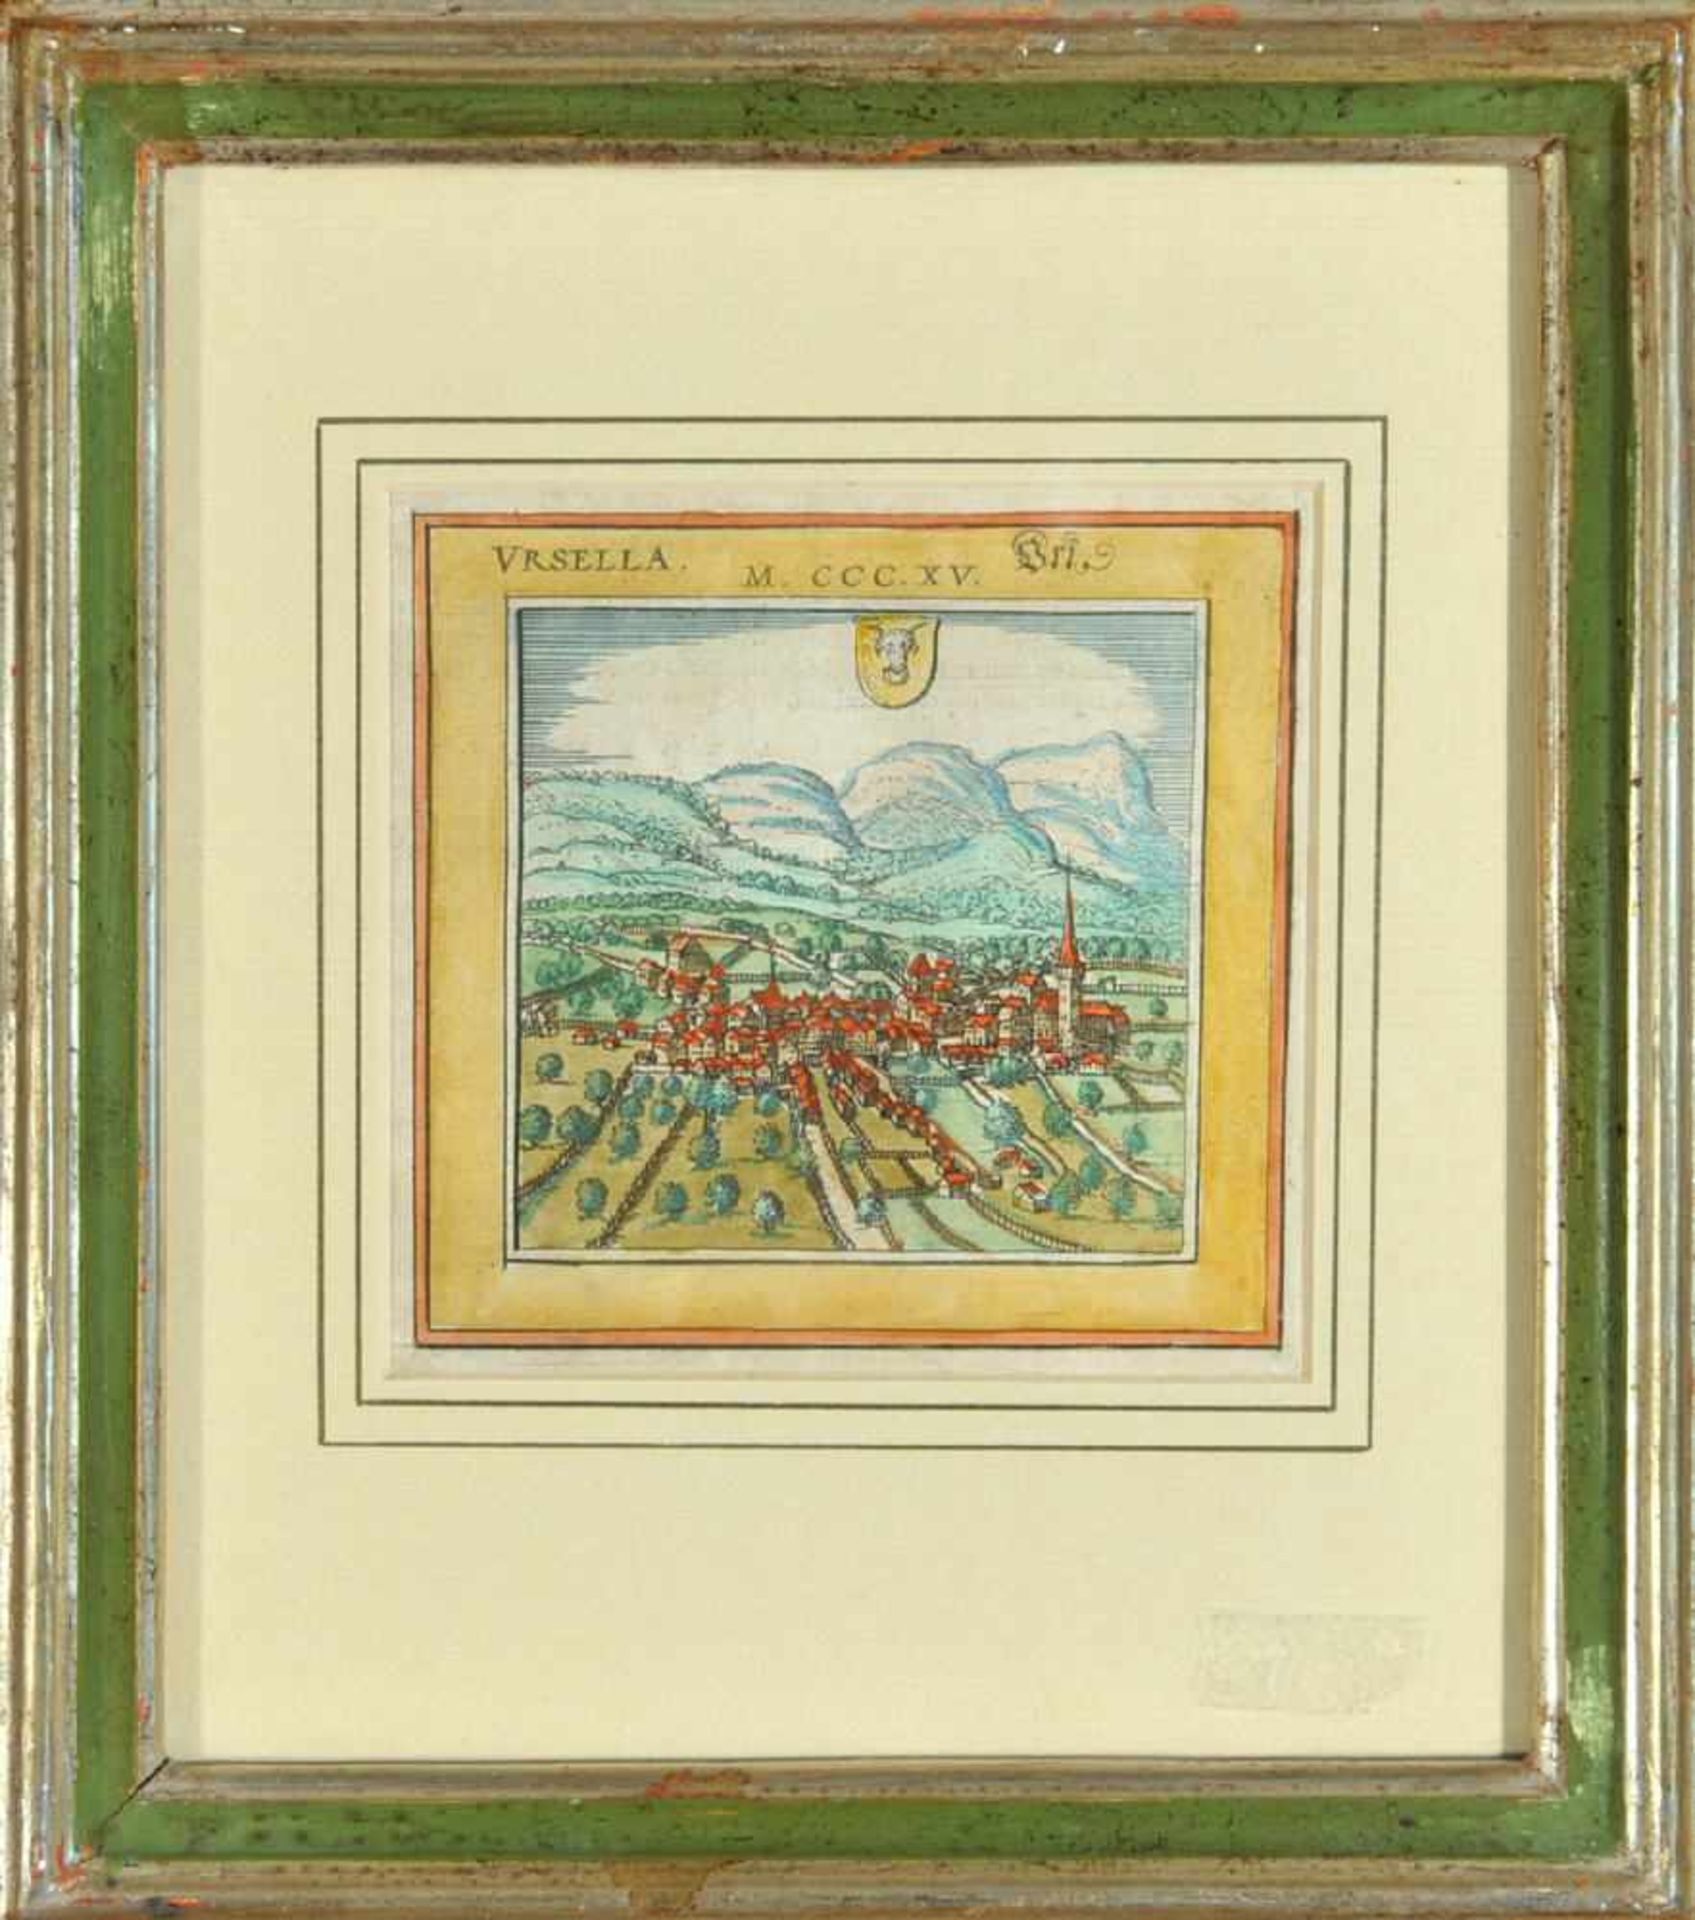 Altdorf (Ursella/Kanton Uri), GesamtansichtKupferstich, handcolor., 10,5 x 10,5 cm, von Braun &